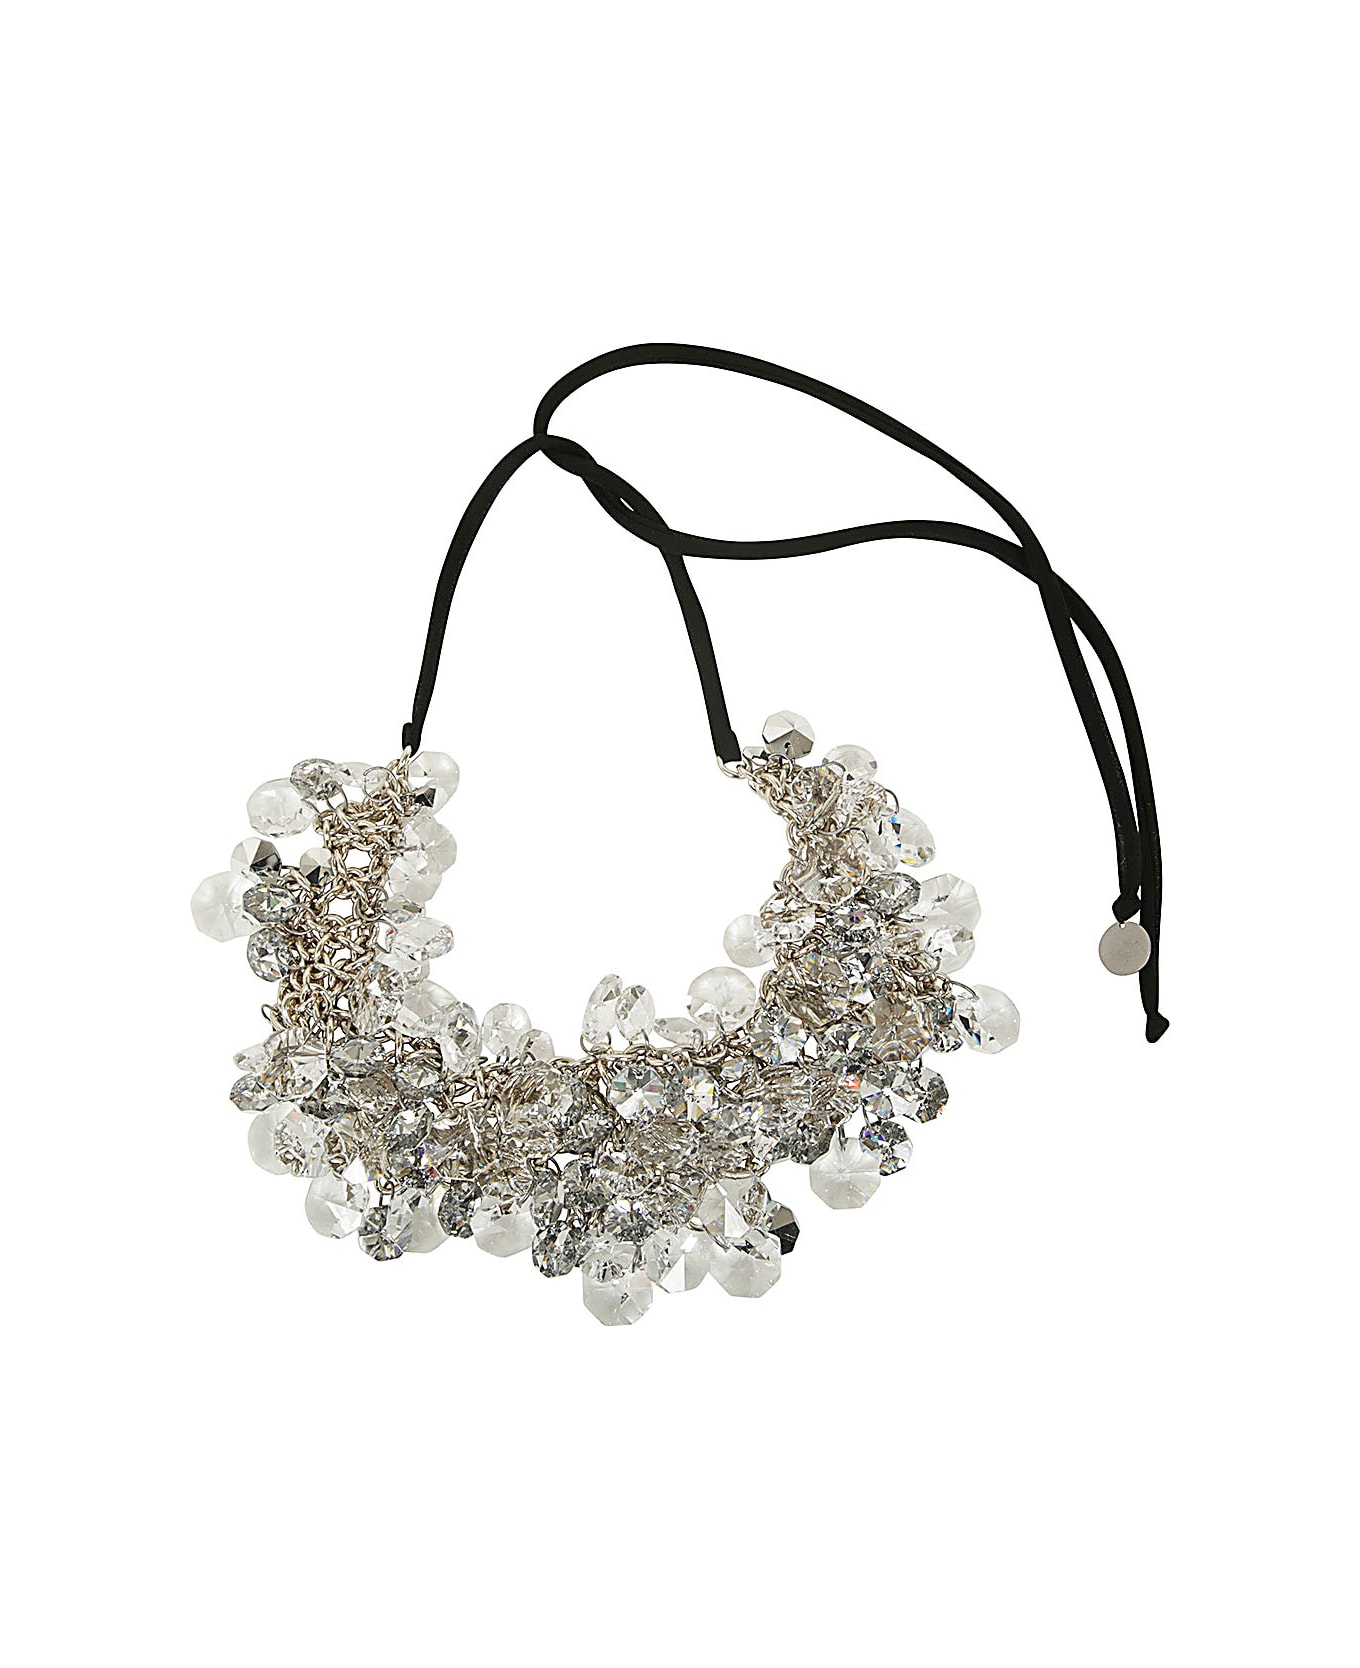 Maria Calderara Crystals And Diamonds Necklace - Tl Trasparent